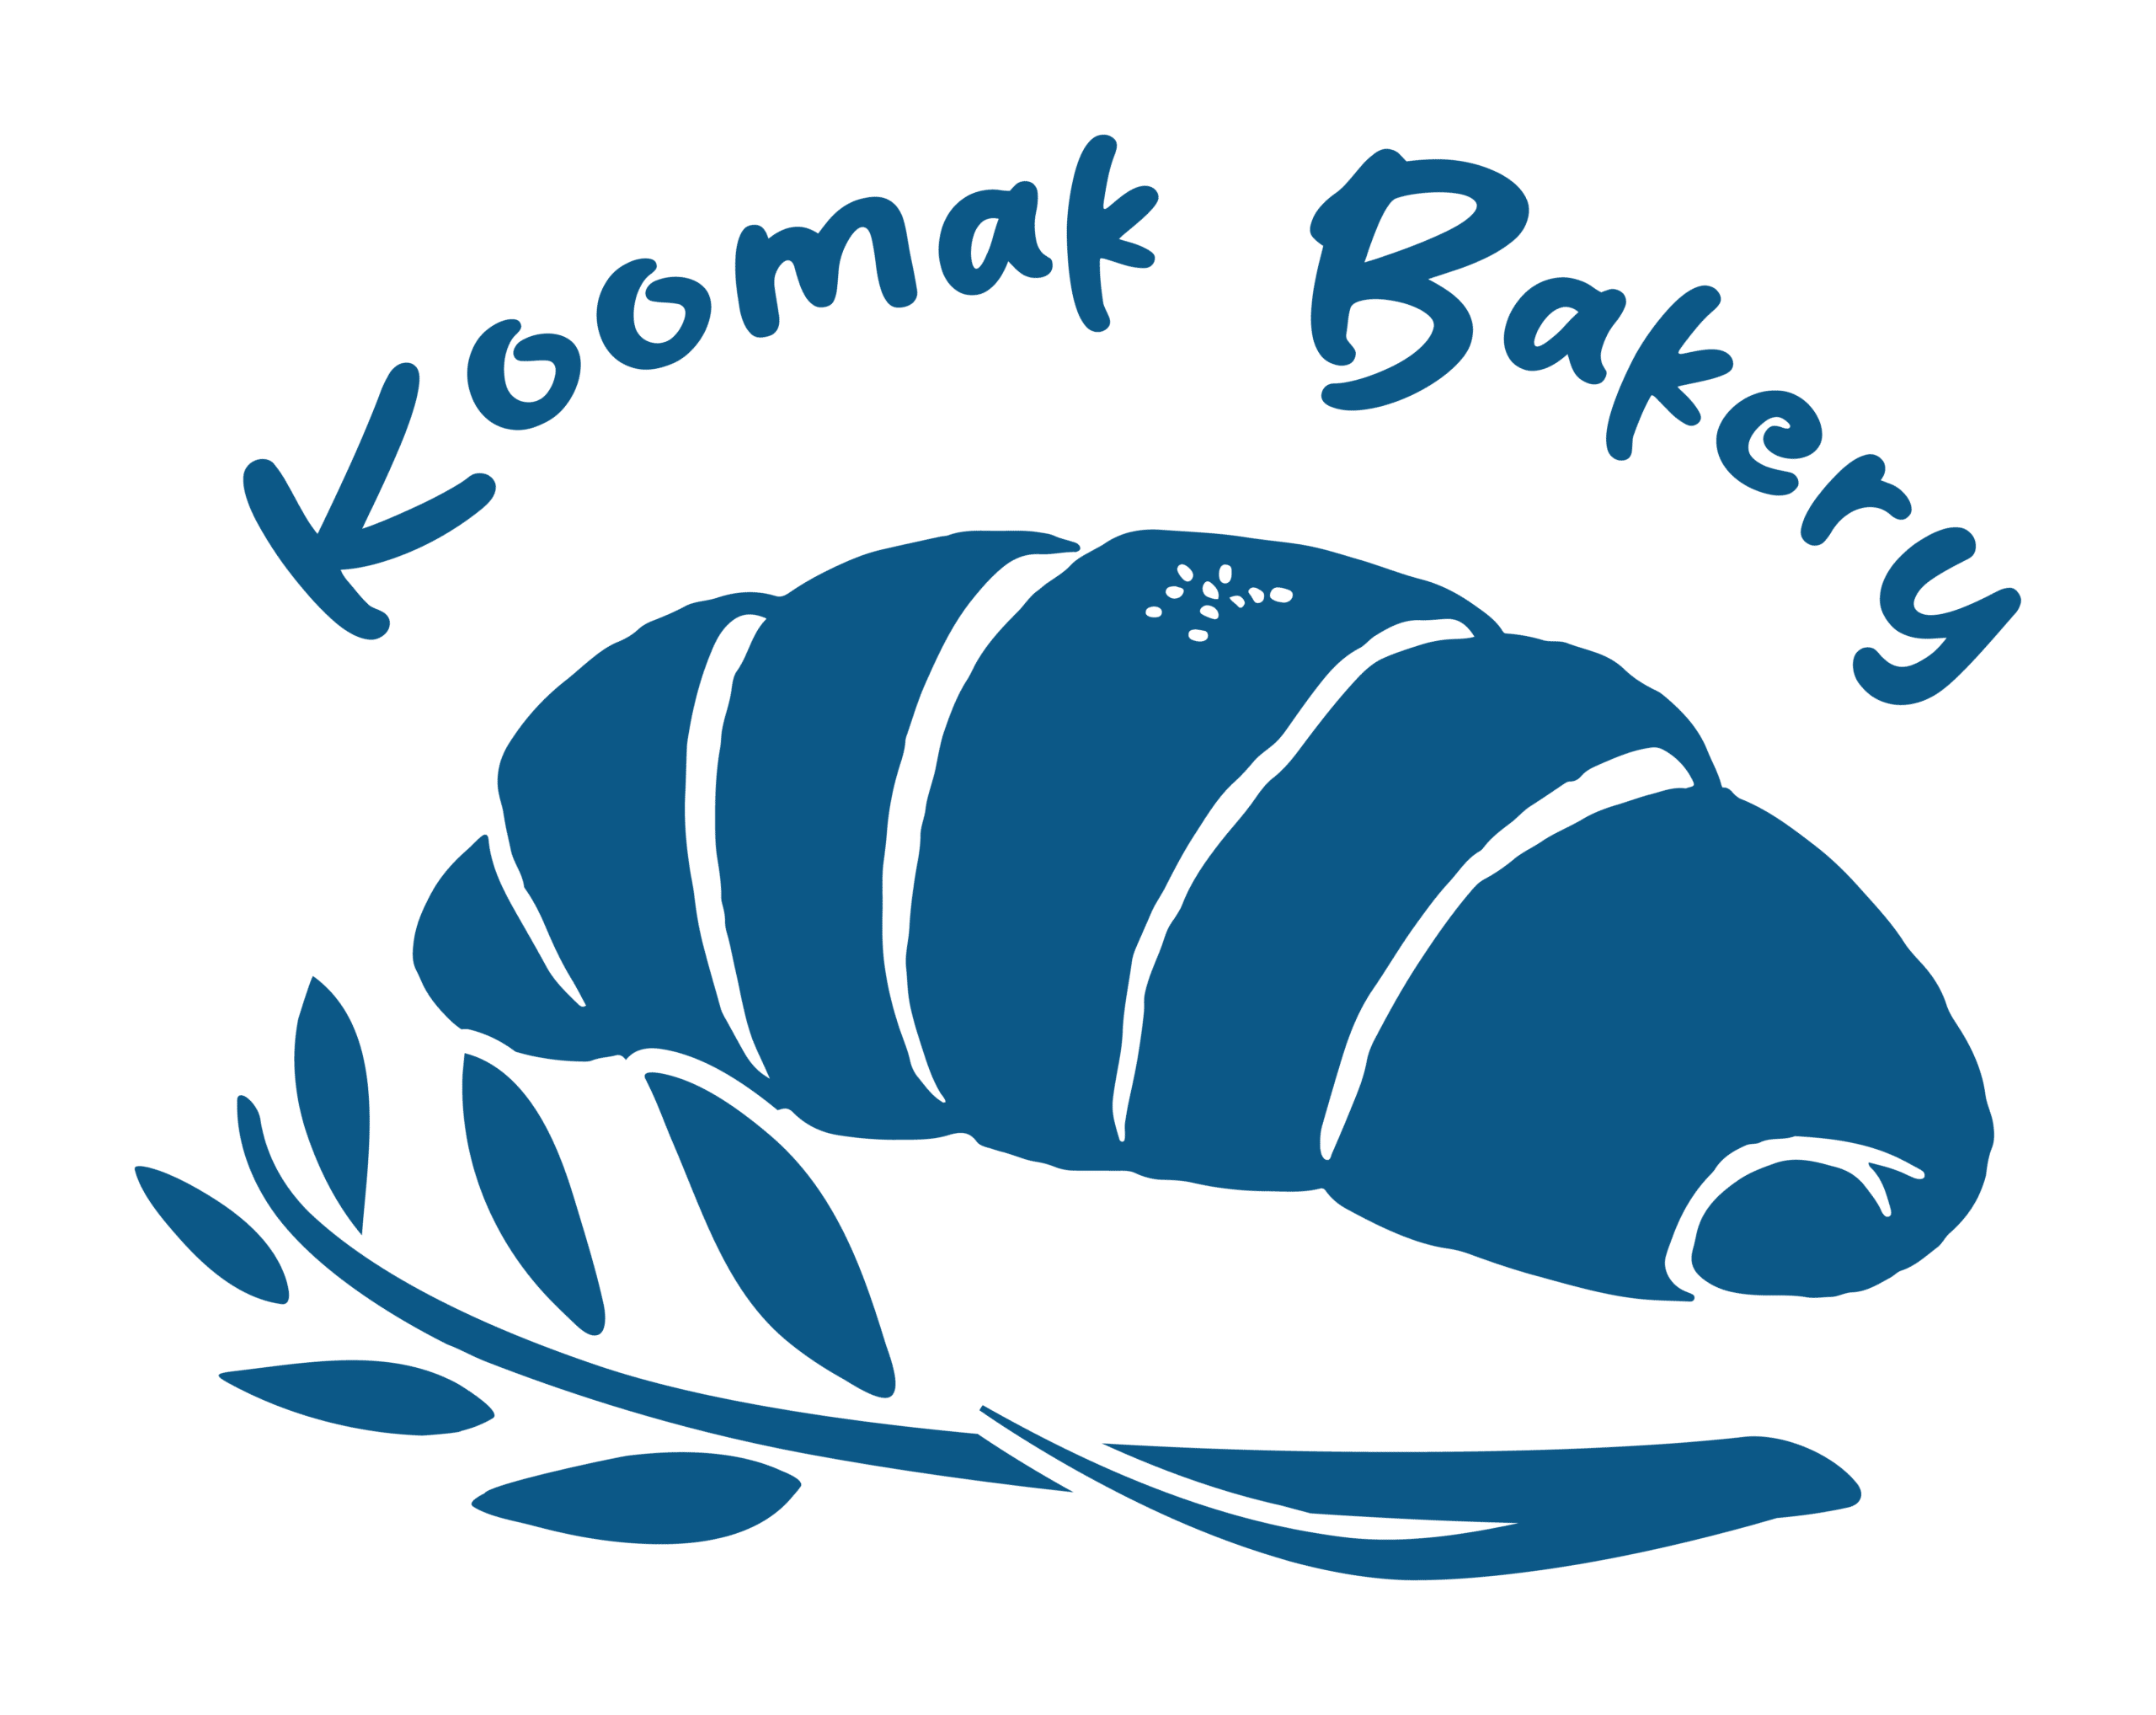 Koomak-image